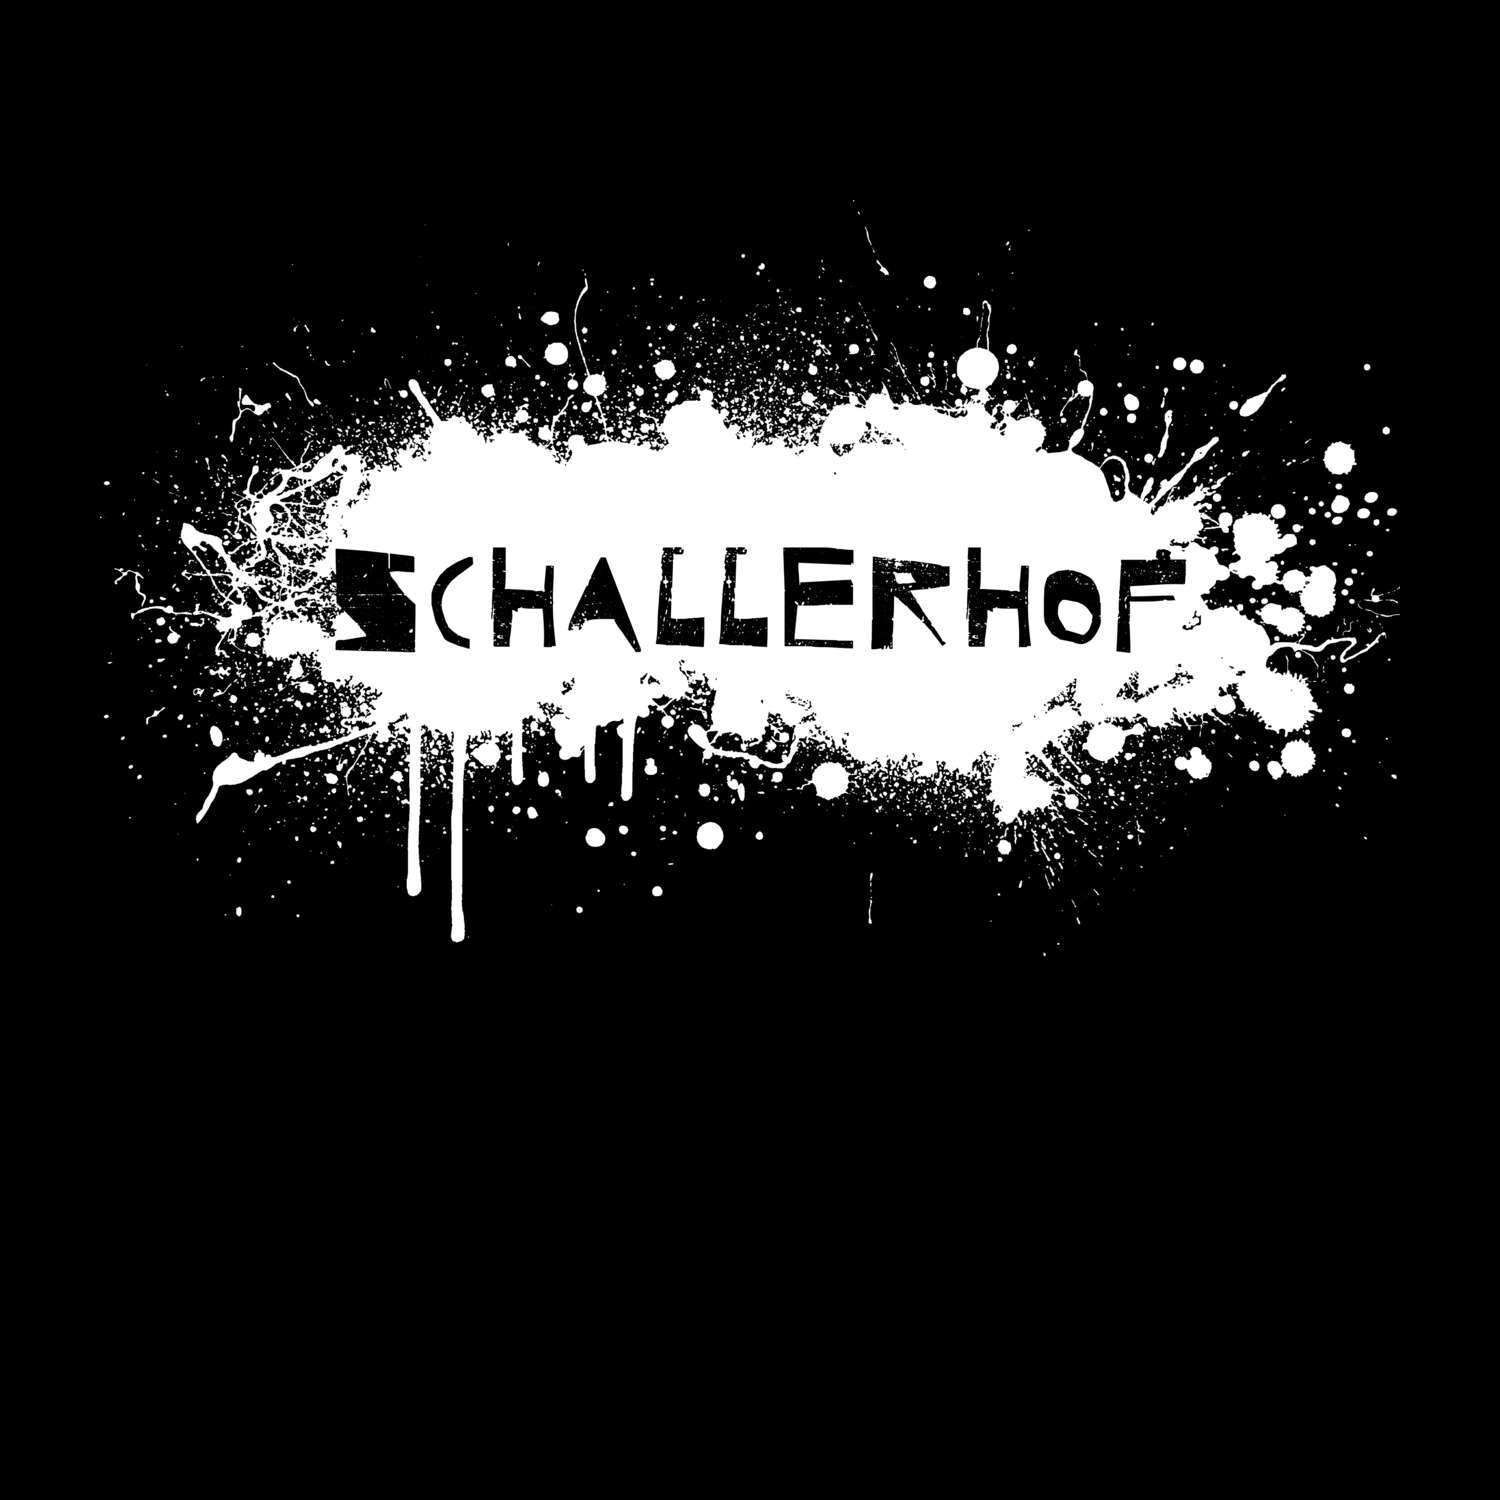 Schallerhof T-Shirt »Paint Splash Punk«